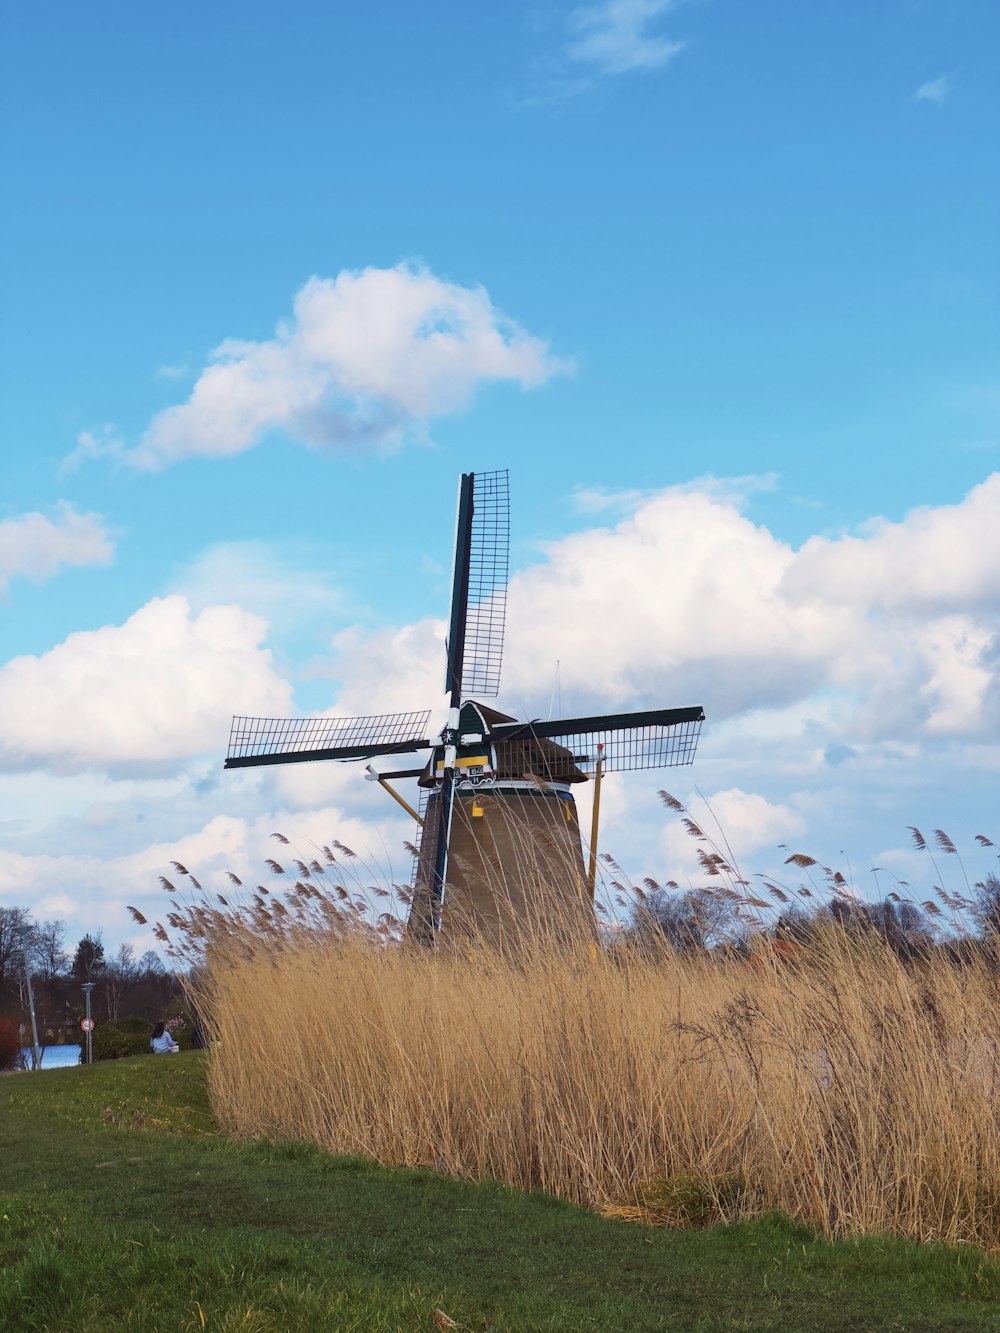 a windmill in a field of tall grass